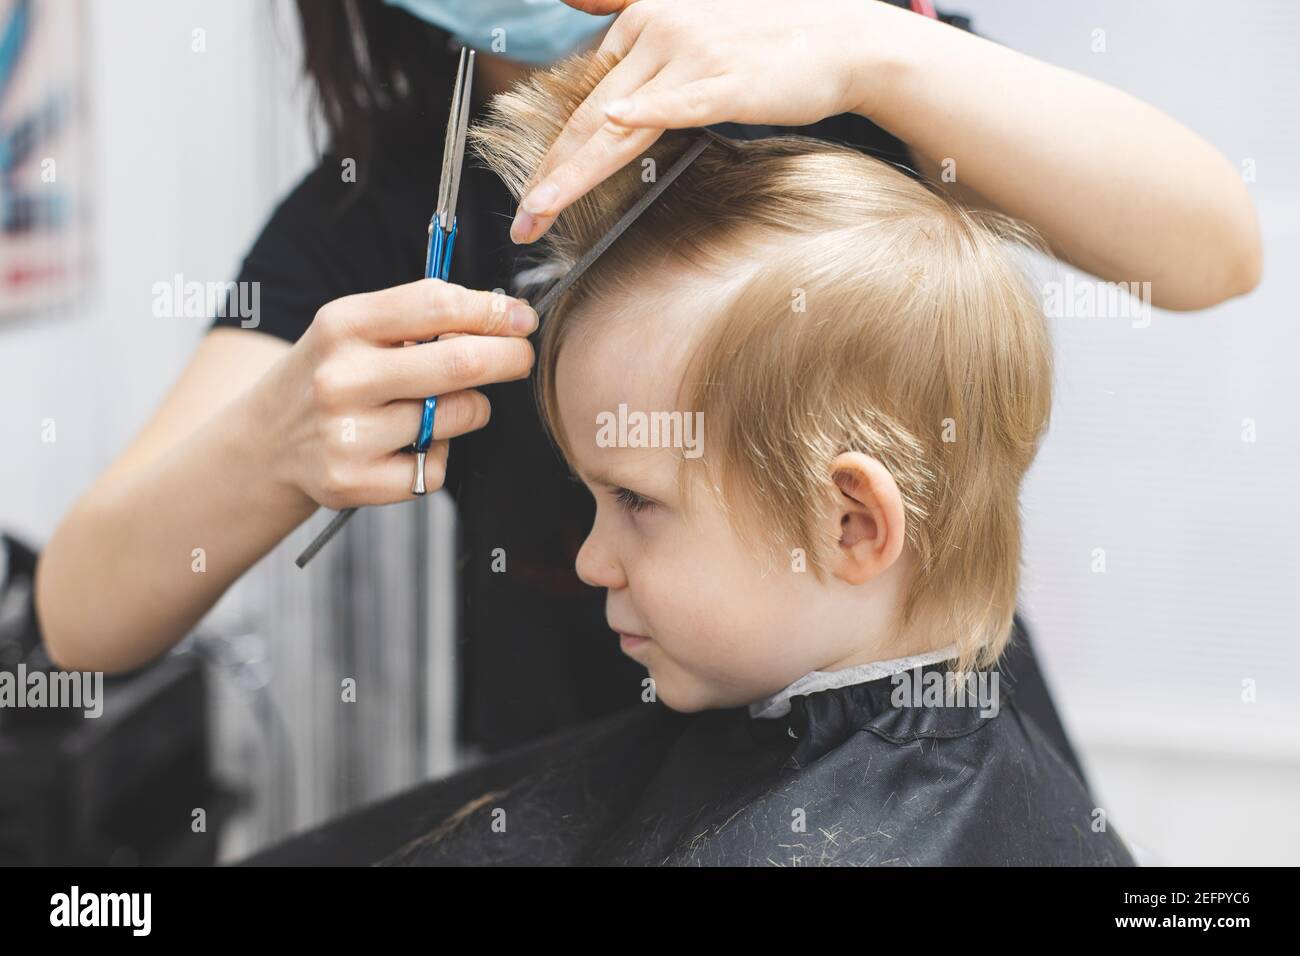 Le coiffeur coupe les cheveux sérieux blond strict enfant garçon. Gros plan sur le style de vie. Concept de beauté, d'hygiène. Banque D'Images